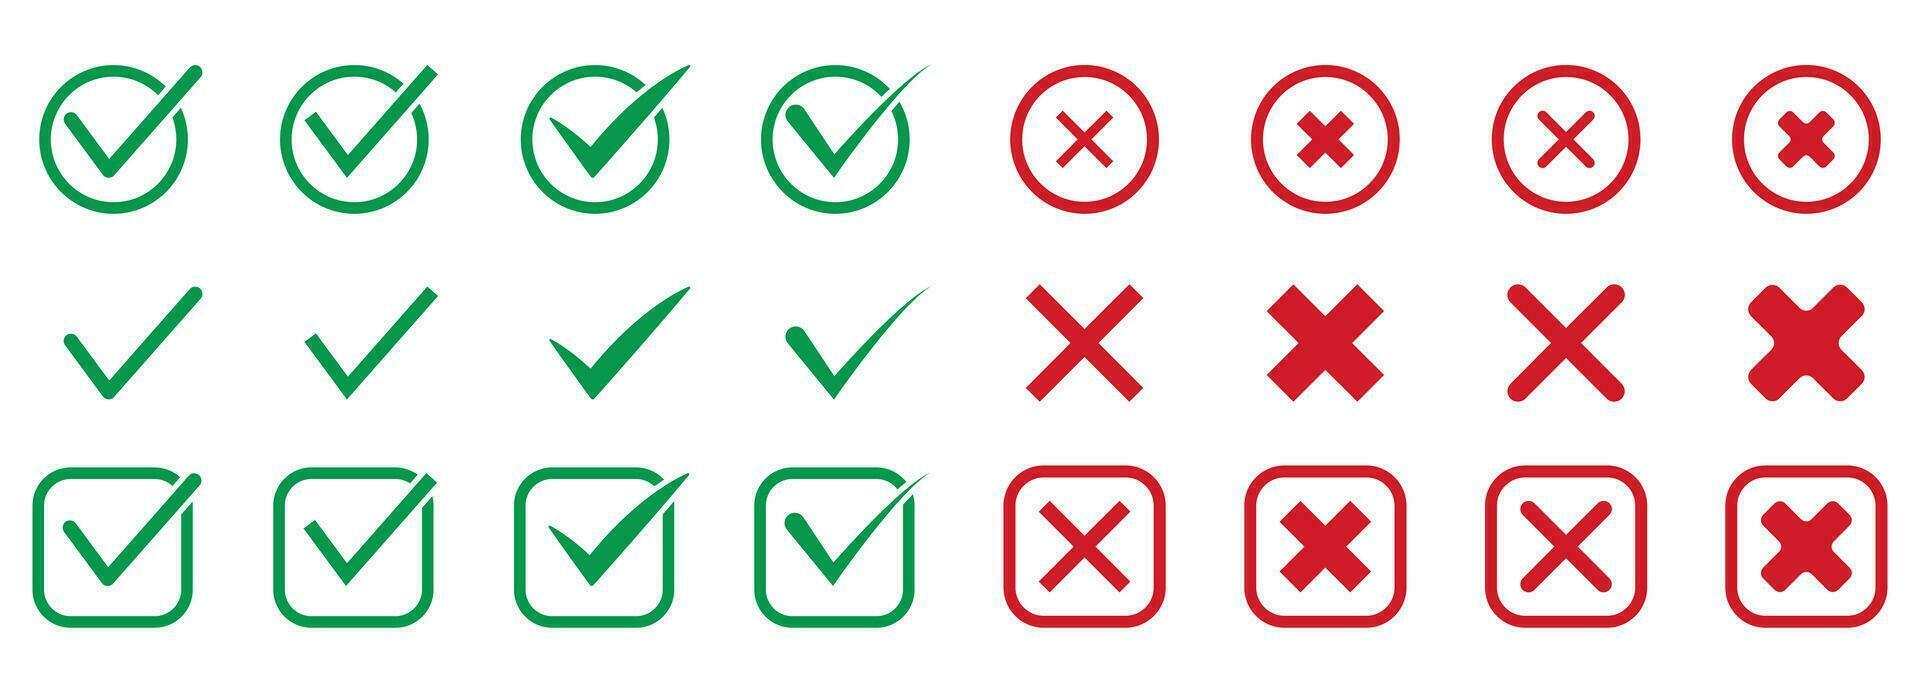 Verifica marca, Carraça e Cruz vermelho e verde silhueta ícone definir. marca de verificação pictograma. certo e errado, rejeitar e aceitar sólido placa. corrigir e incorreta símbolo coleção. isolado vetor ilustração.